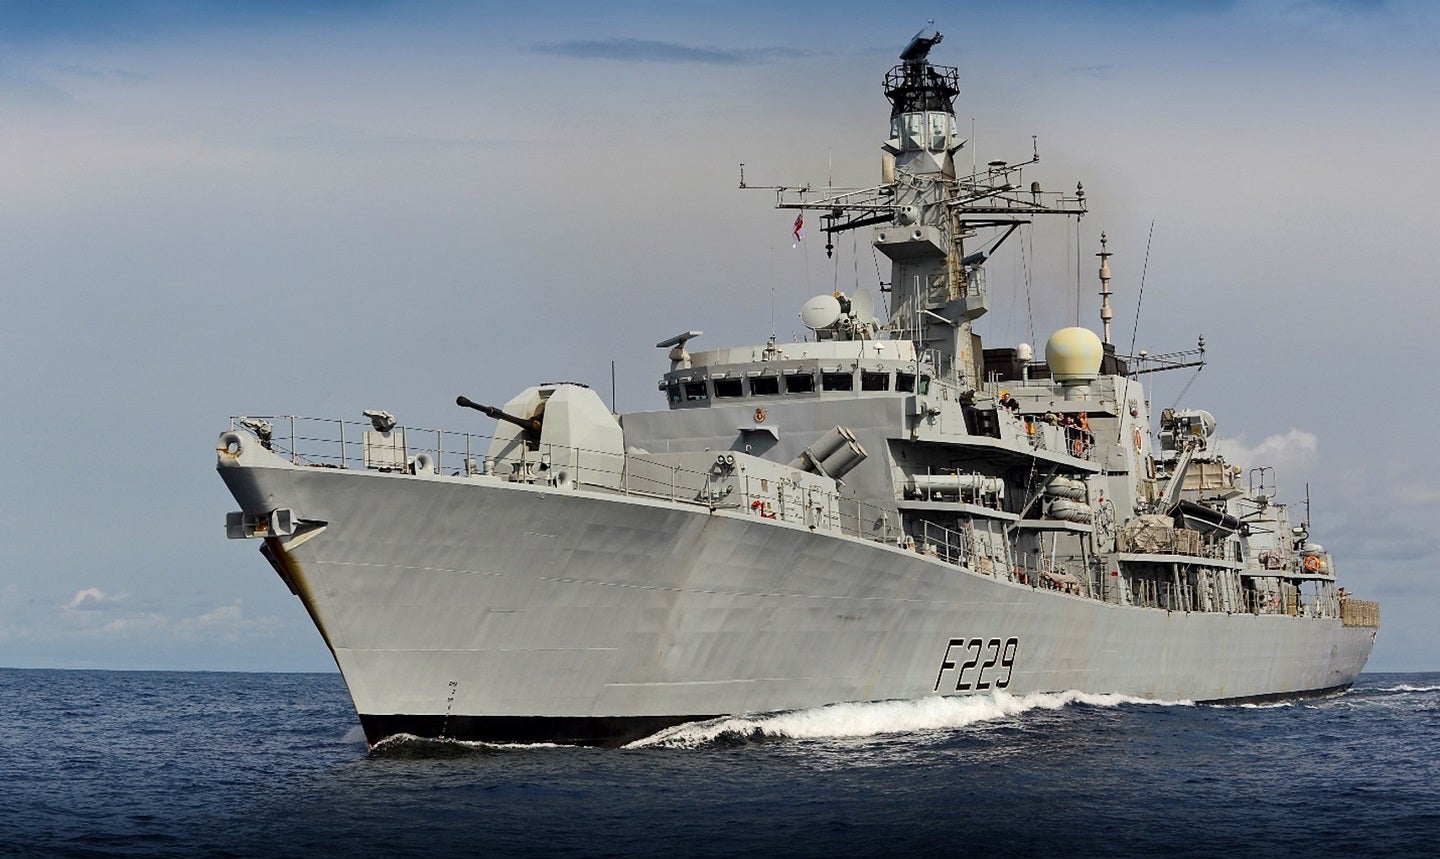 SEA ofrecerá software para mejorar los sistemas de sonar de la Royal Navy